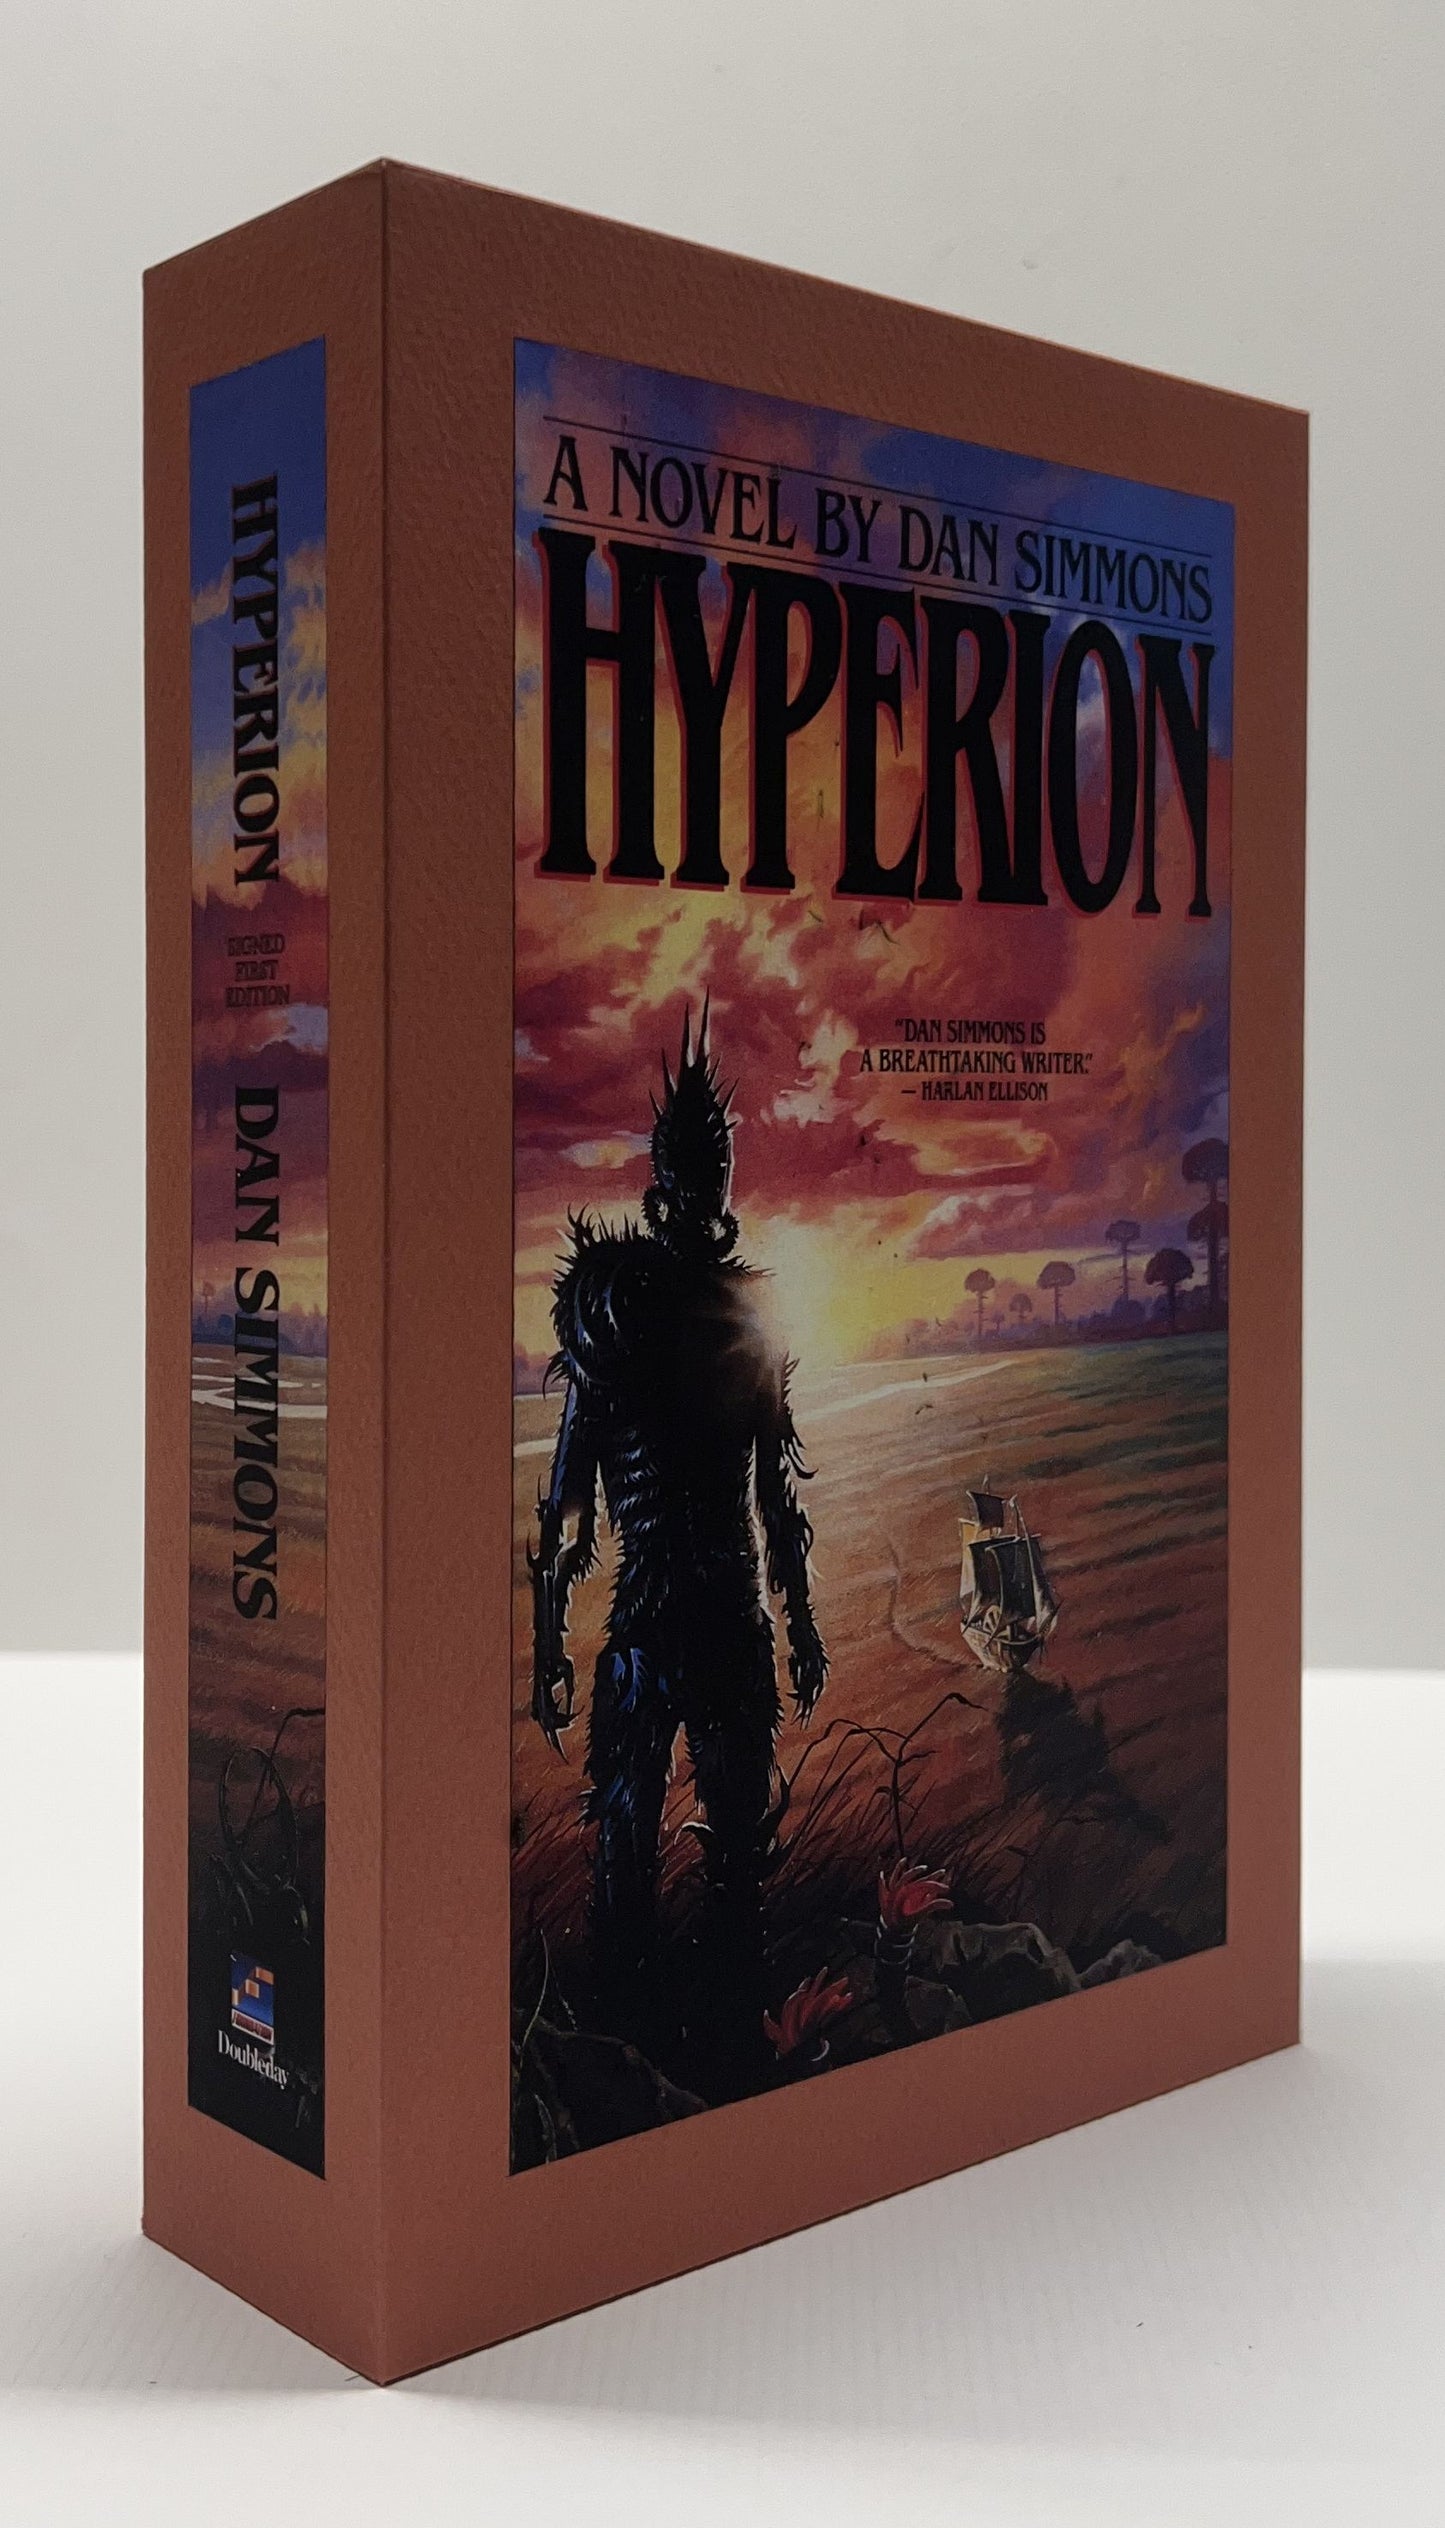 CUSTOM SLIPCASE for - Dan Simmons - HYPERION - 1st Edition / 1st Printing